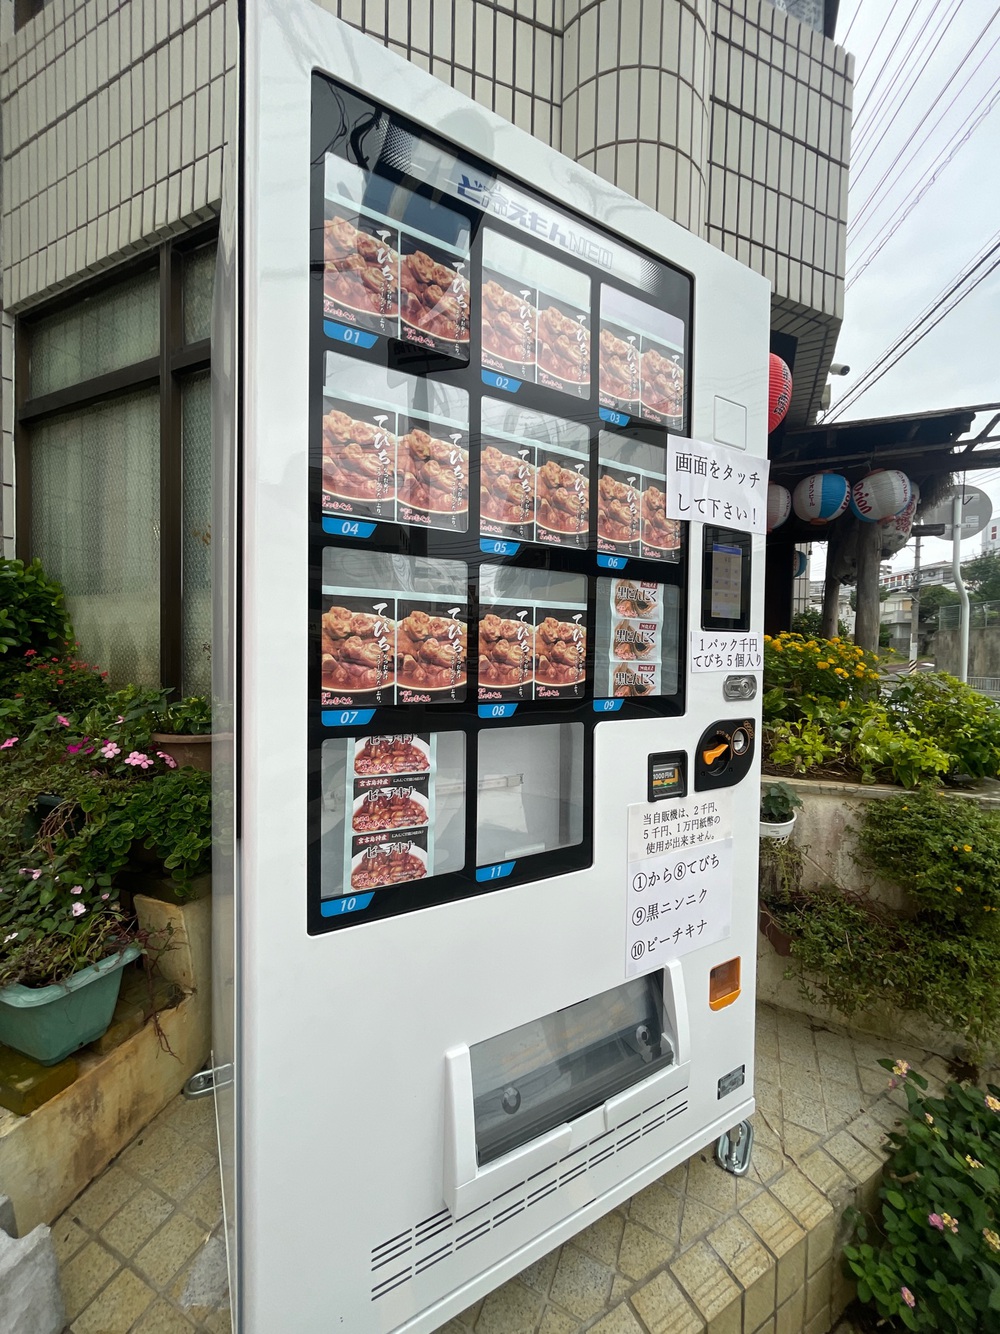 浦添市で見つけた『てびちとピーチキナ自販機』（みやぁぐん 宮国）